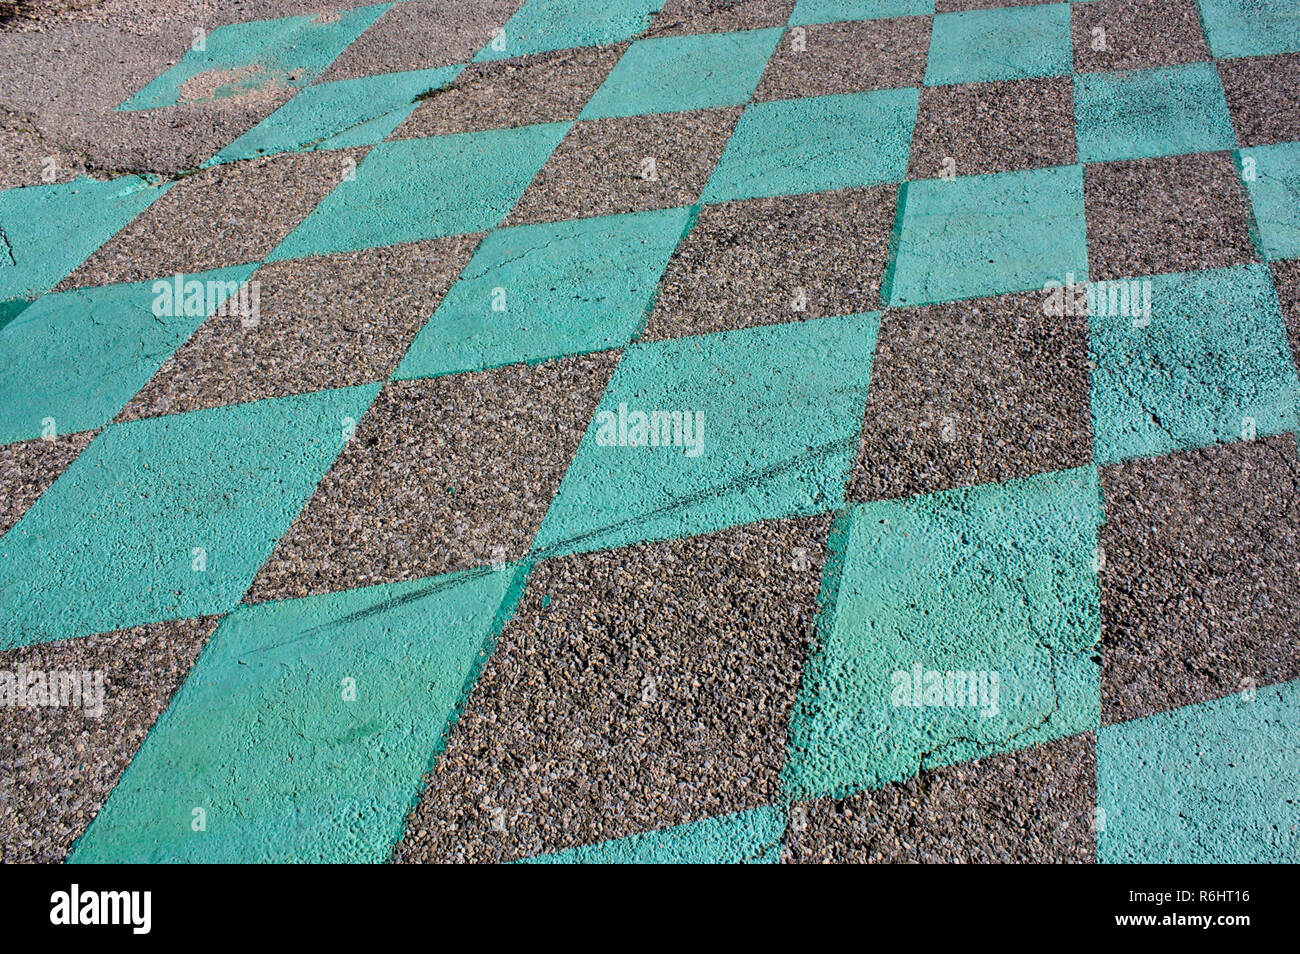 Muster der grüne Quadrate auf dem Asphalt. Sieht aus wie Racing Finish Line. Rauhe Teer, Schmutz und grüner Farbe. Stockfoto